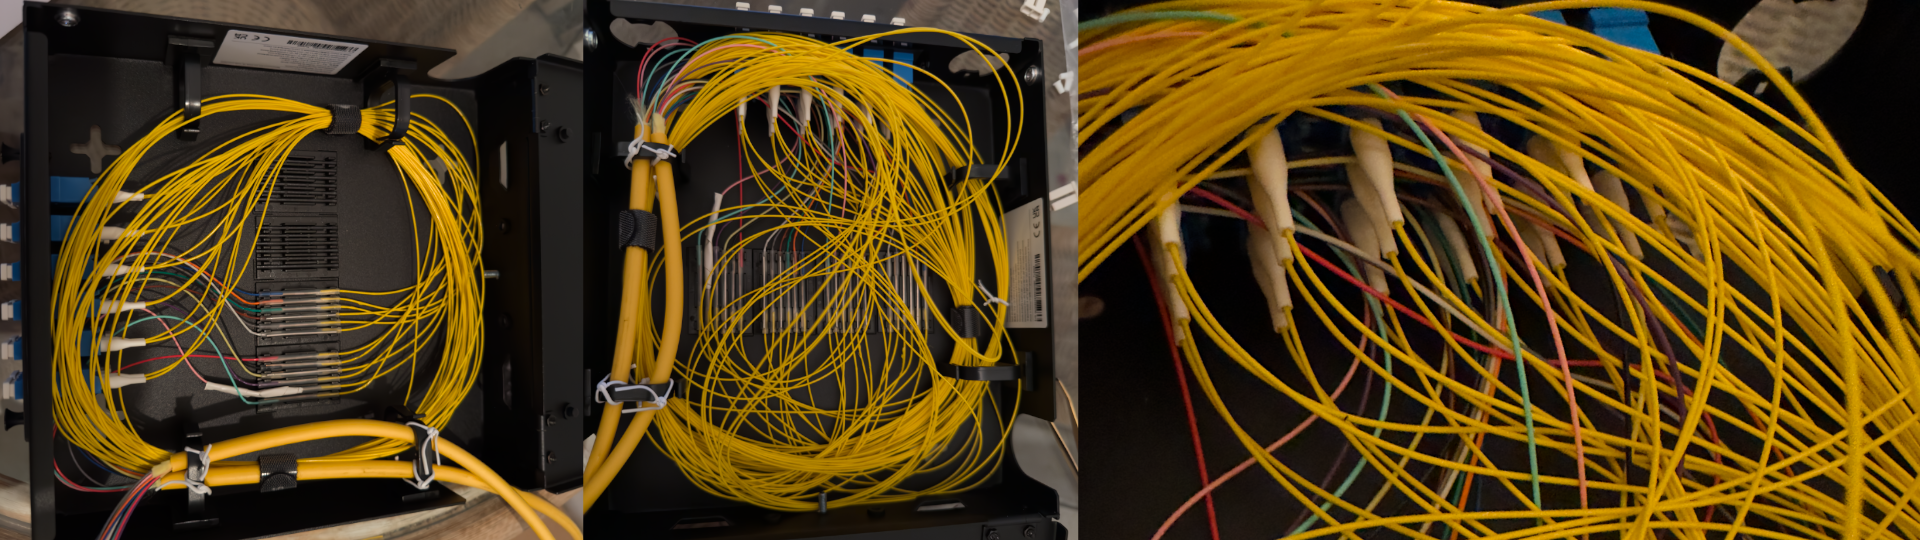 A mess of fiber cables